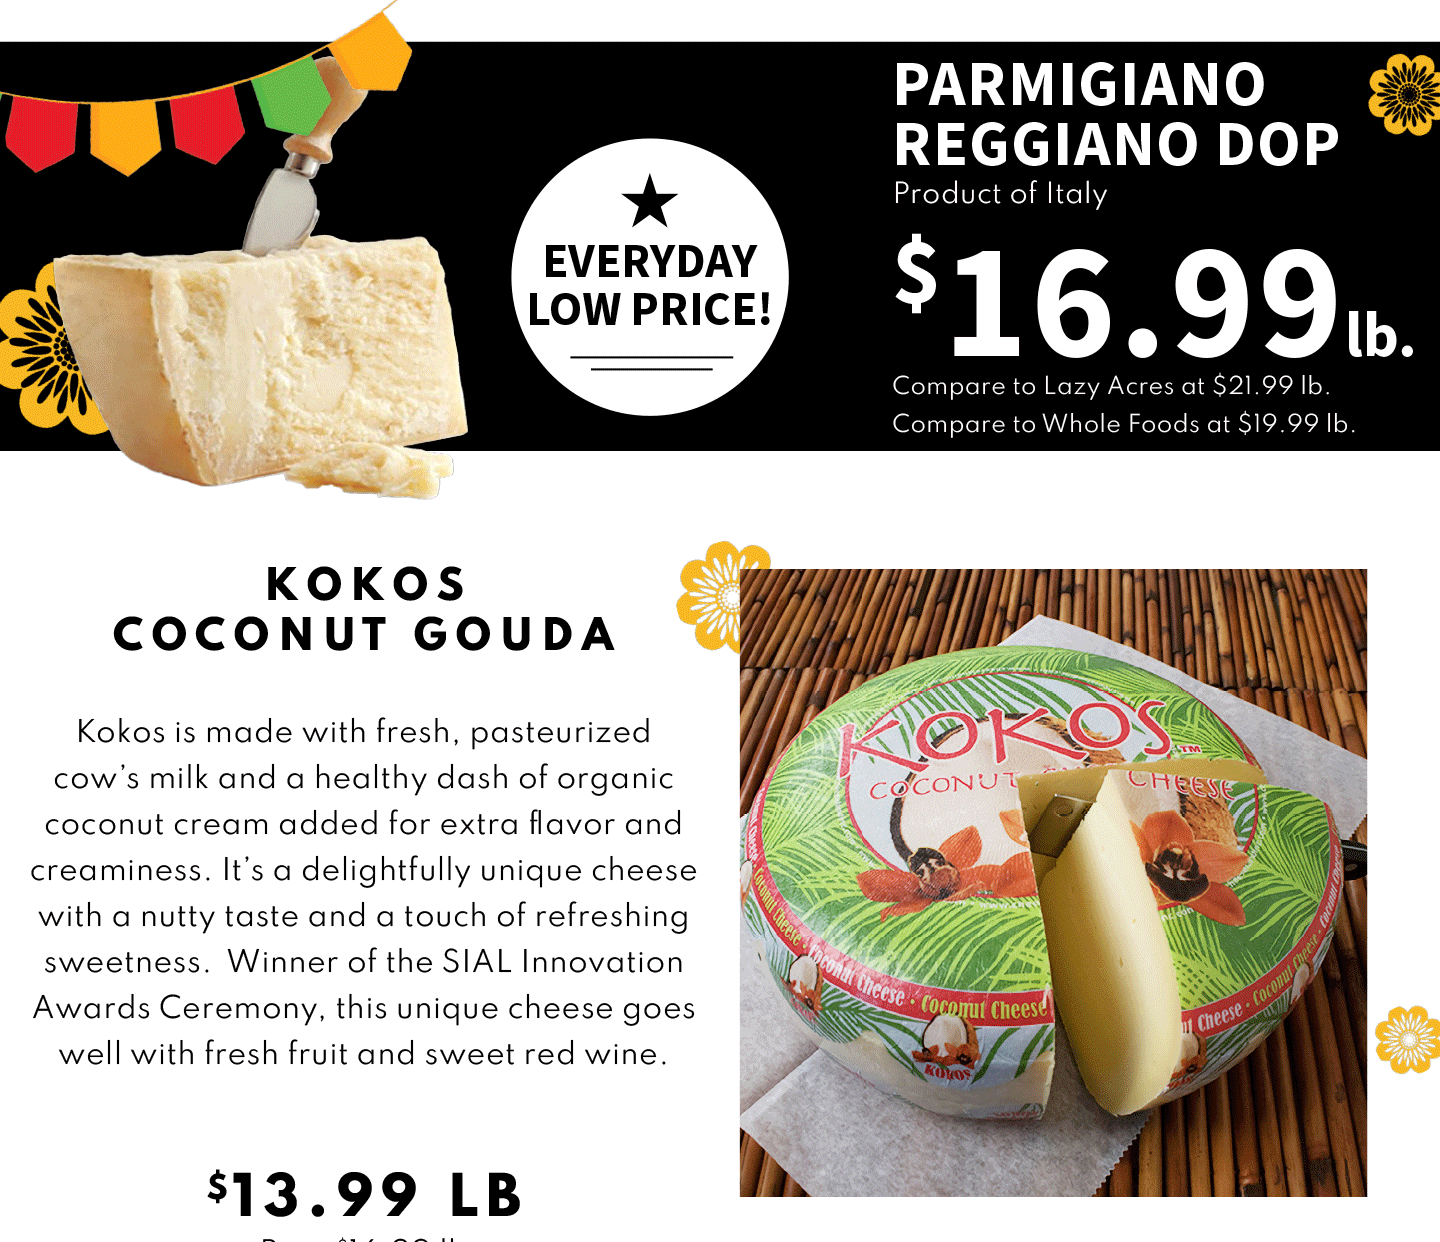 Parmigiano Reggiano DOP $16.99 lb and Kokos Coconut Gouda $13.99 lb